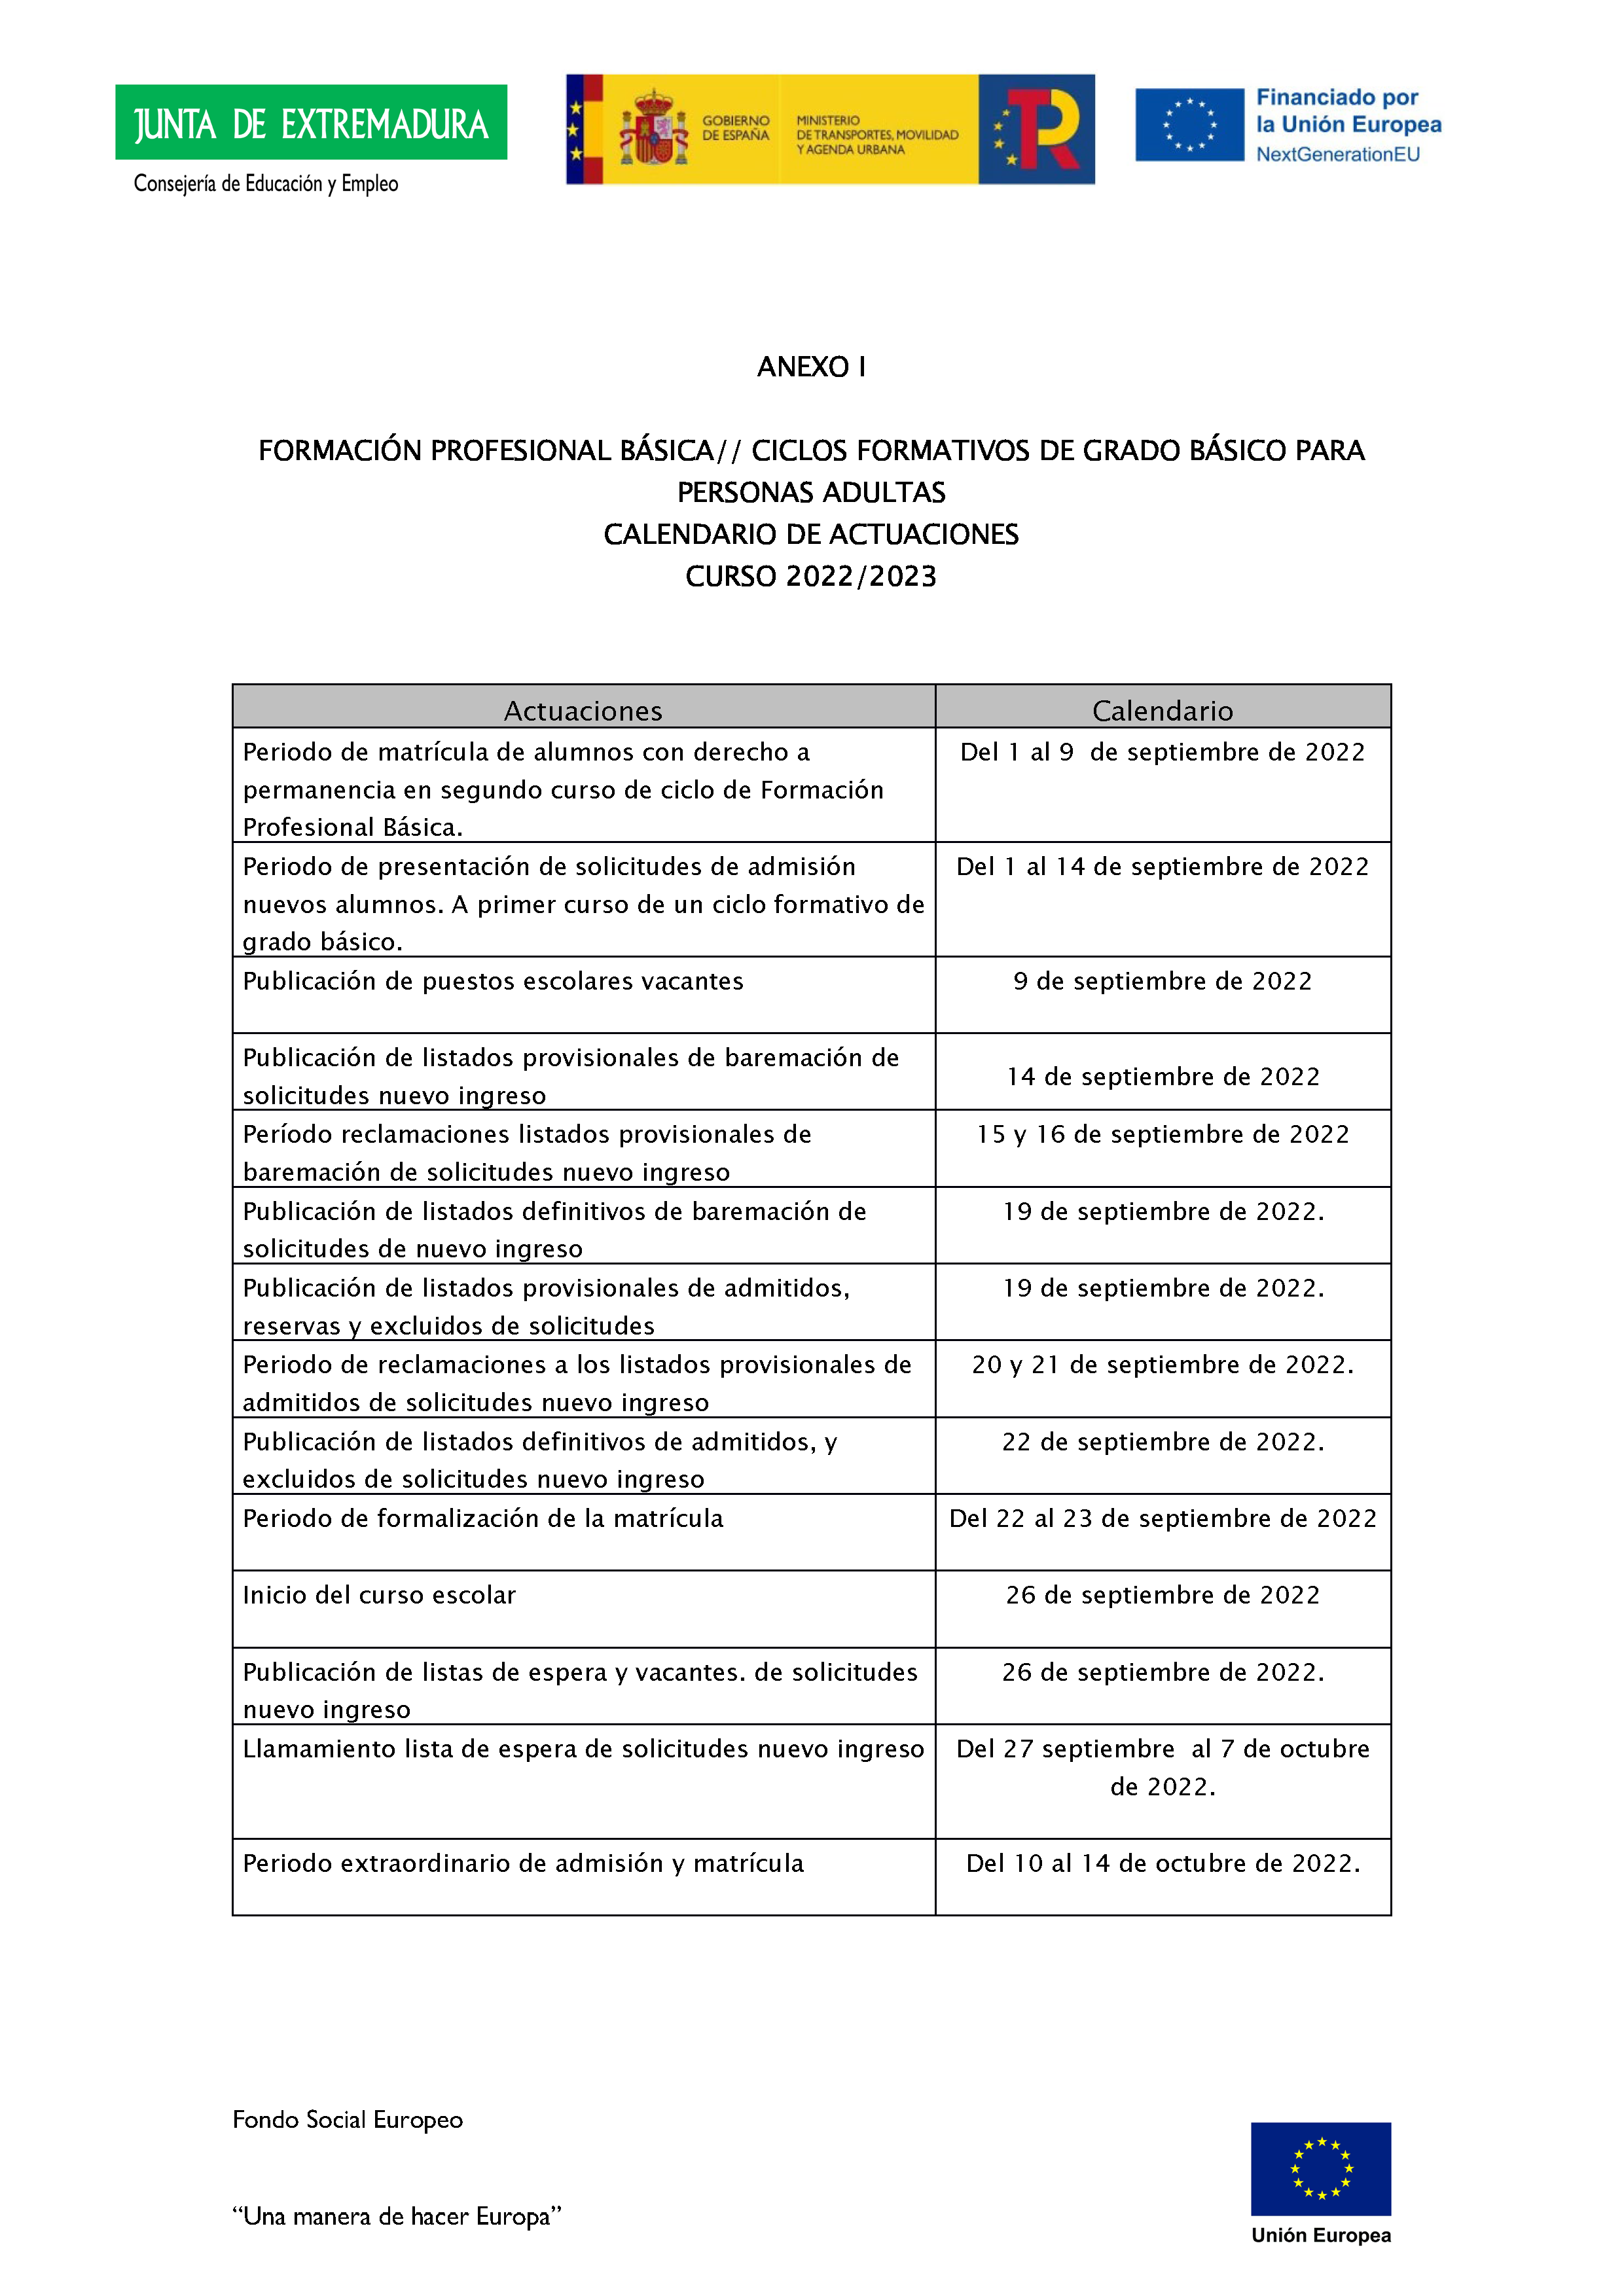 ANEXO IFORMACIÓN PROFESIONAL BÁSICA// CICLOS FORMATIVOS DE GRADO BÁSICO PARA PERSONAS ADULTAS Pag 1